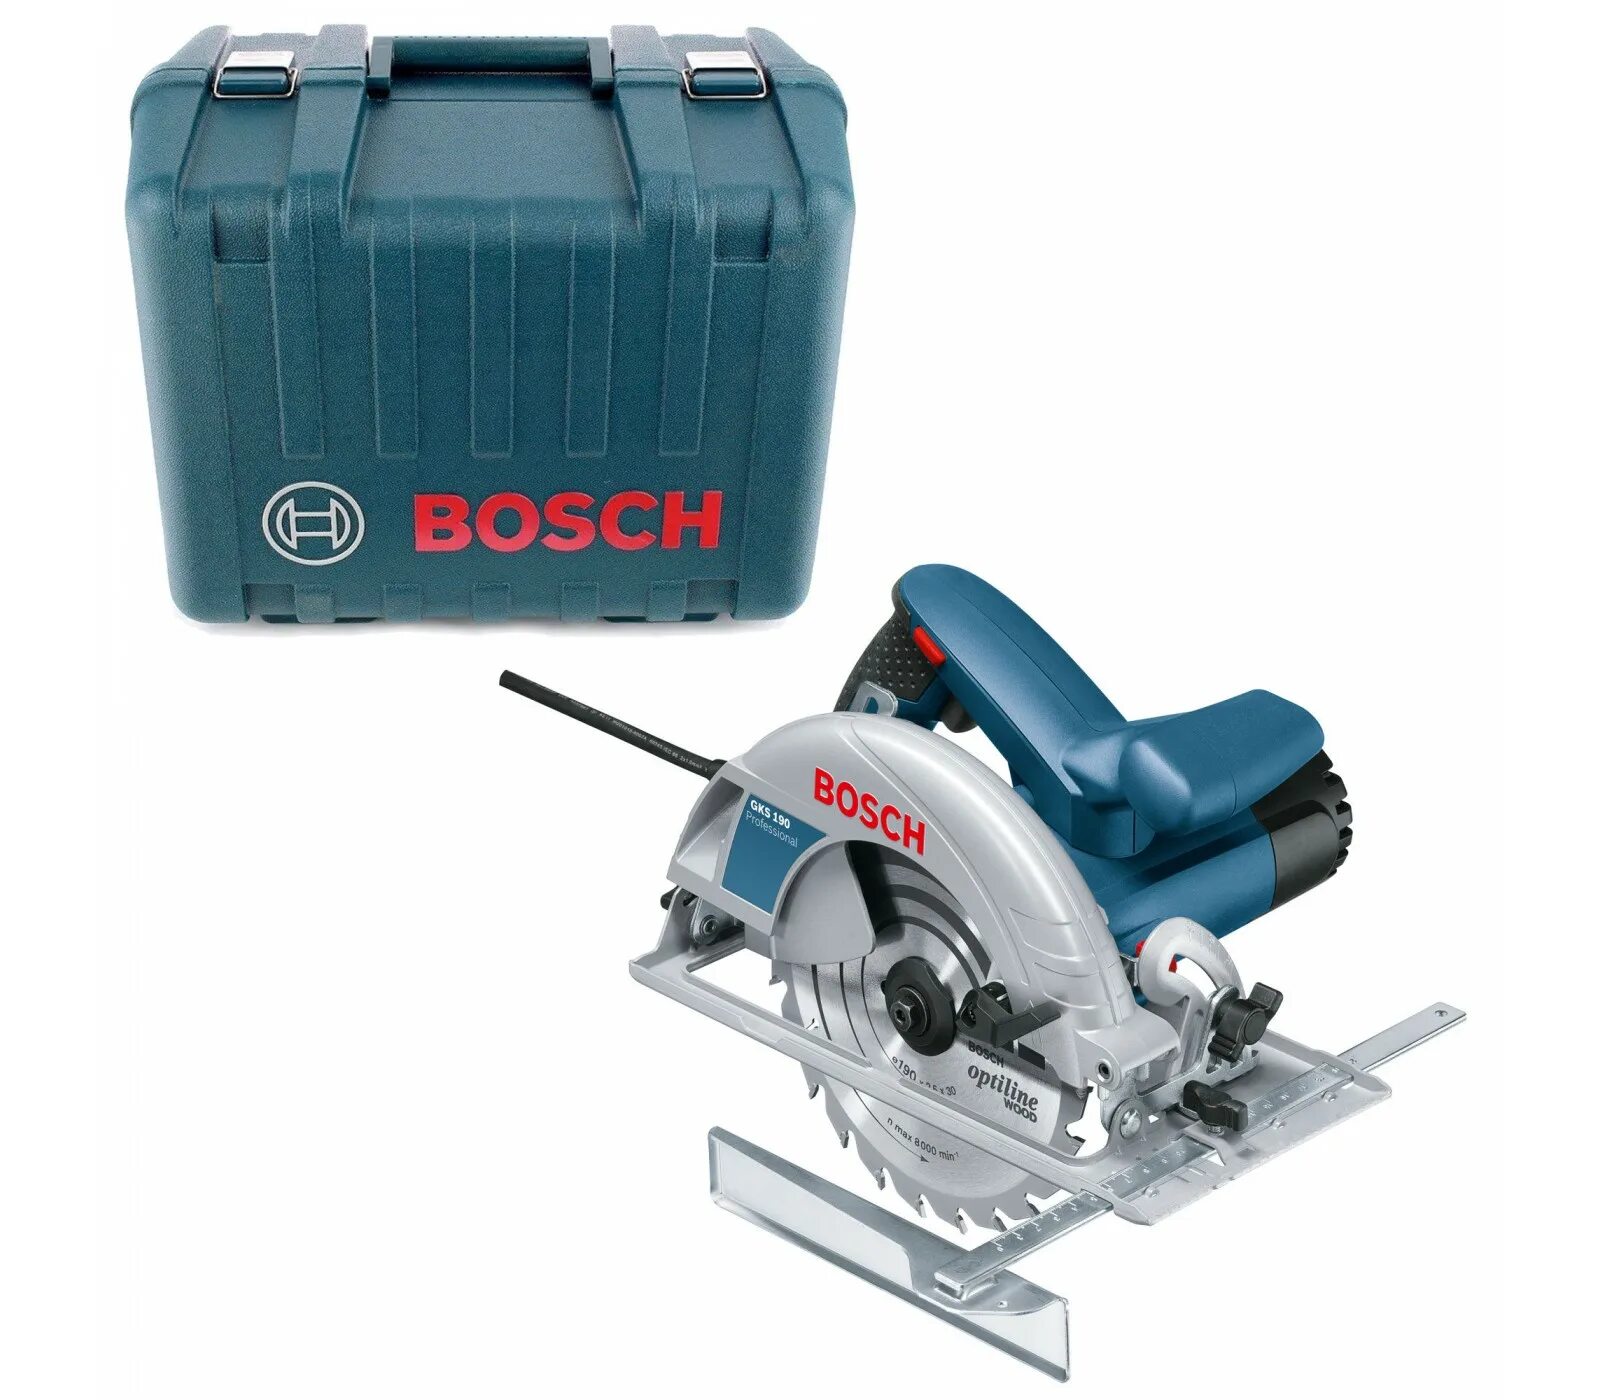 Bosch GKS 190. Пила дисковая Bosch GKS 190. Кейс для циркулярной пилы Bosch GKS 190 professional. Bosch 190 GKS циркулярка.